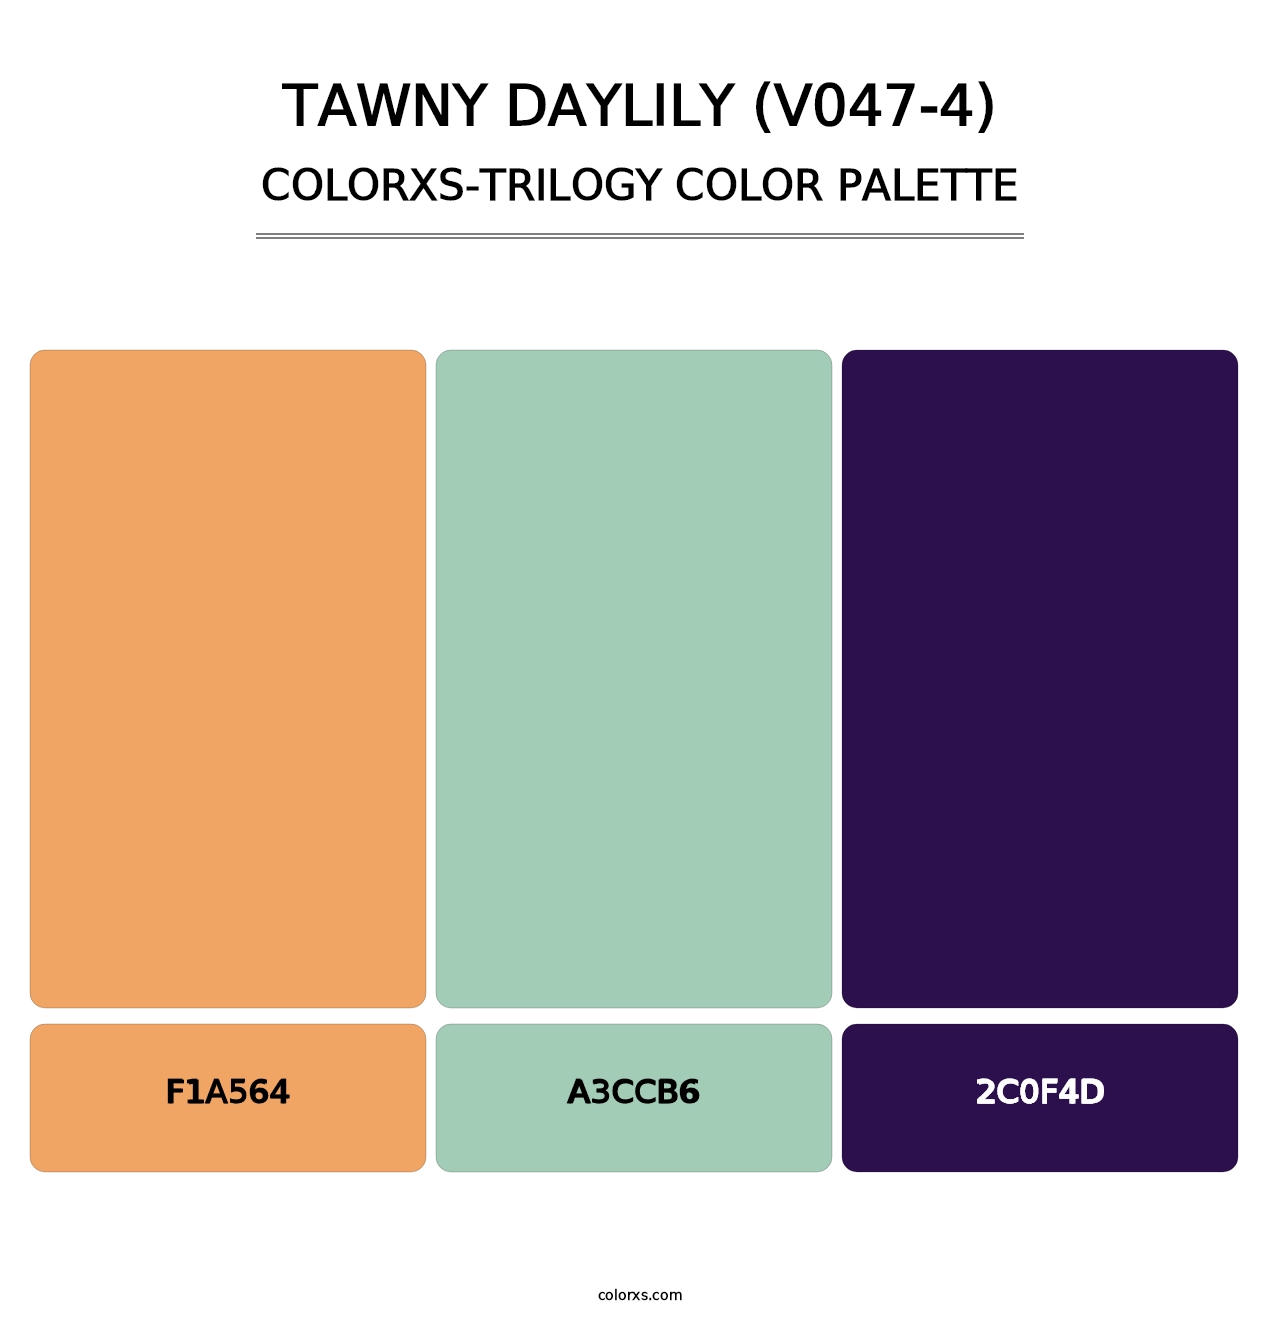 Tawny Daylily (V047-4) - Colorxs Trilogy Palette